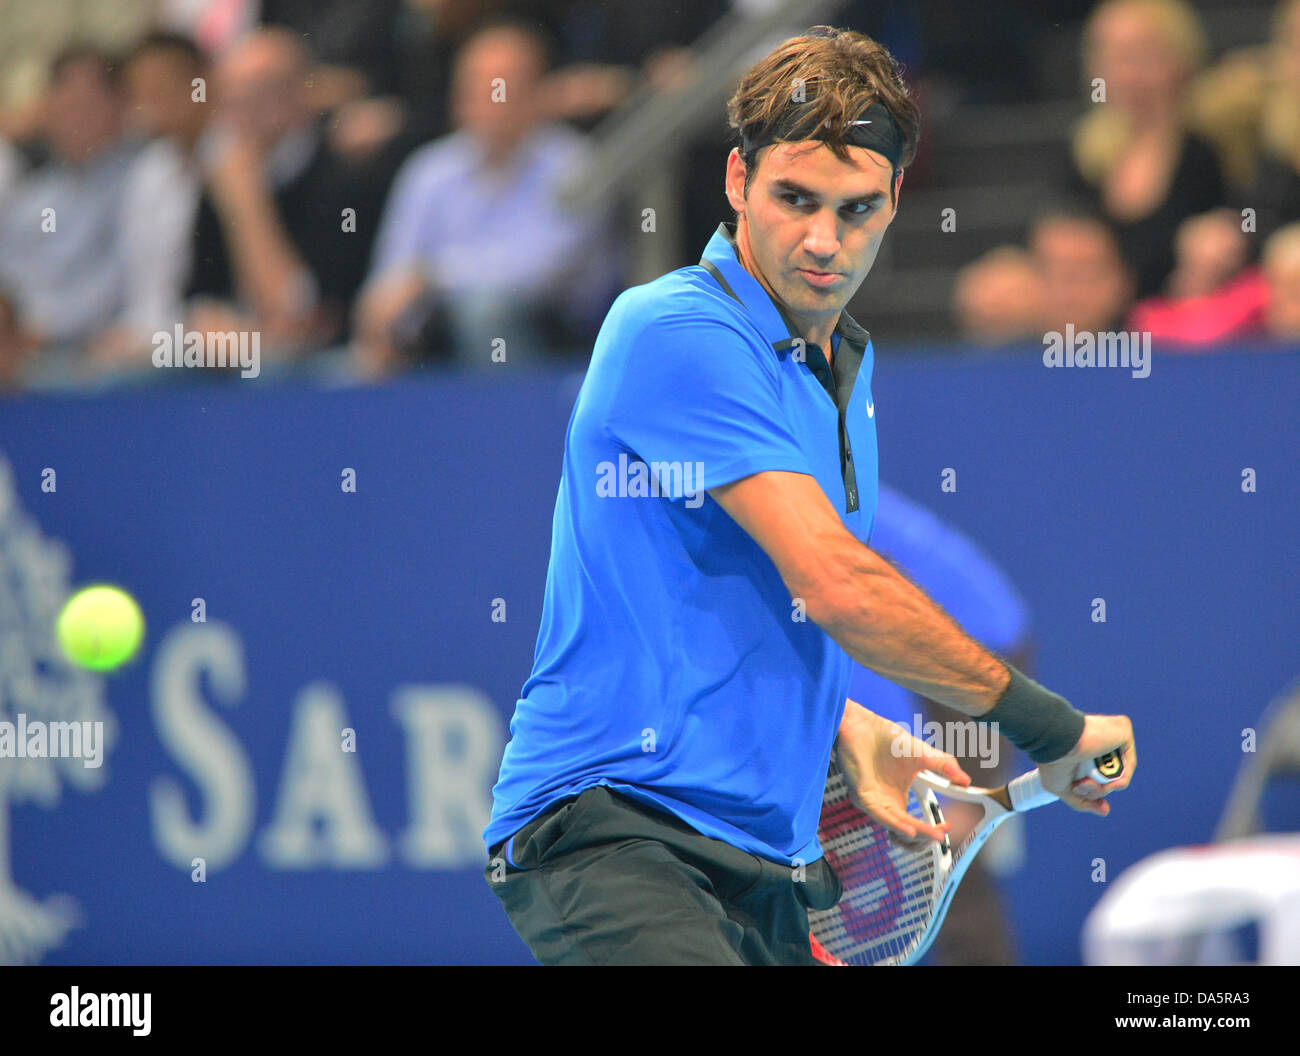 Roger Federer, Federer, Svizzero, interni di Basilea, in Svizzera, sport, tennis, giocatore di tennis, nessun modello di rilascio, 2012 Foto Stock